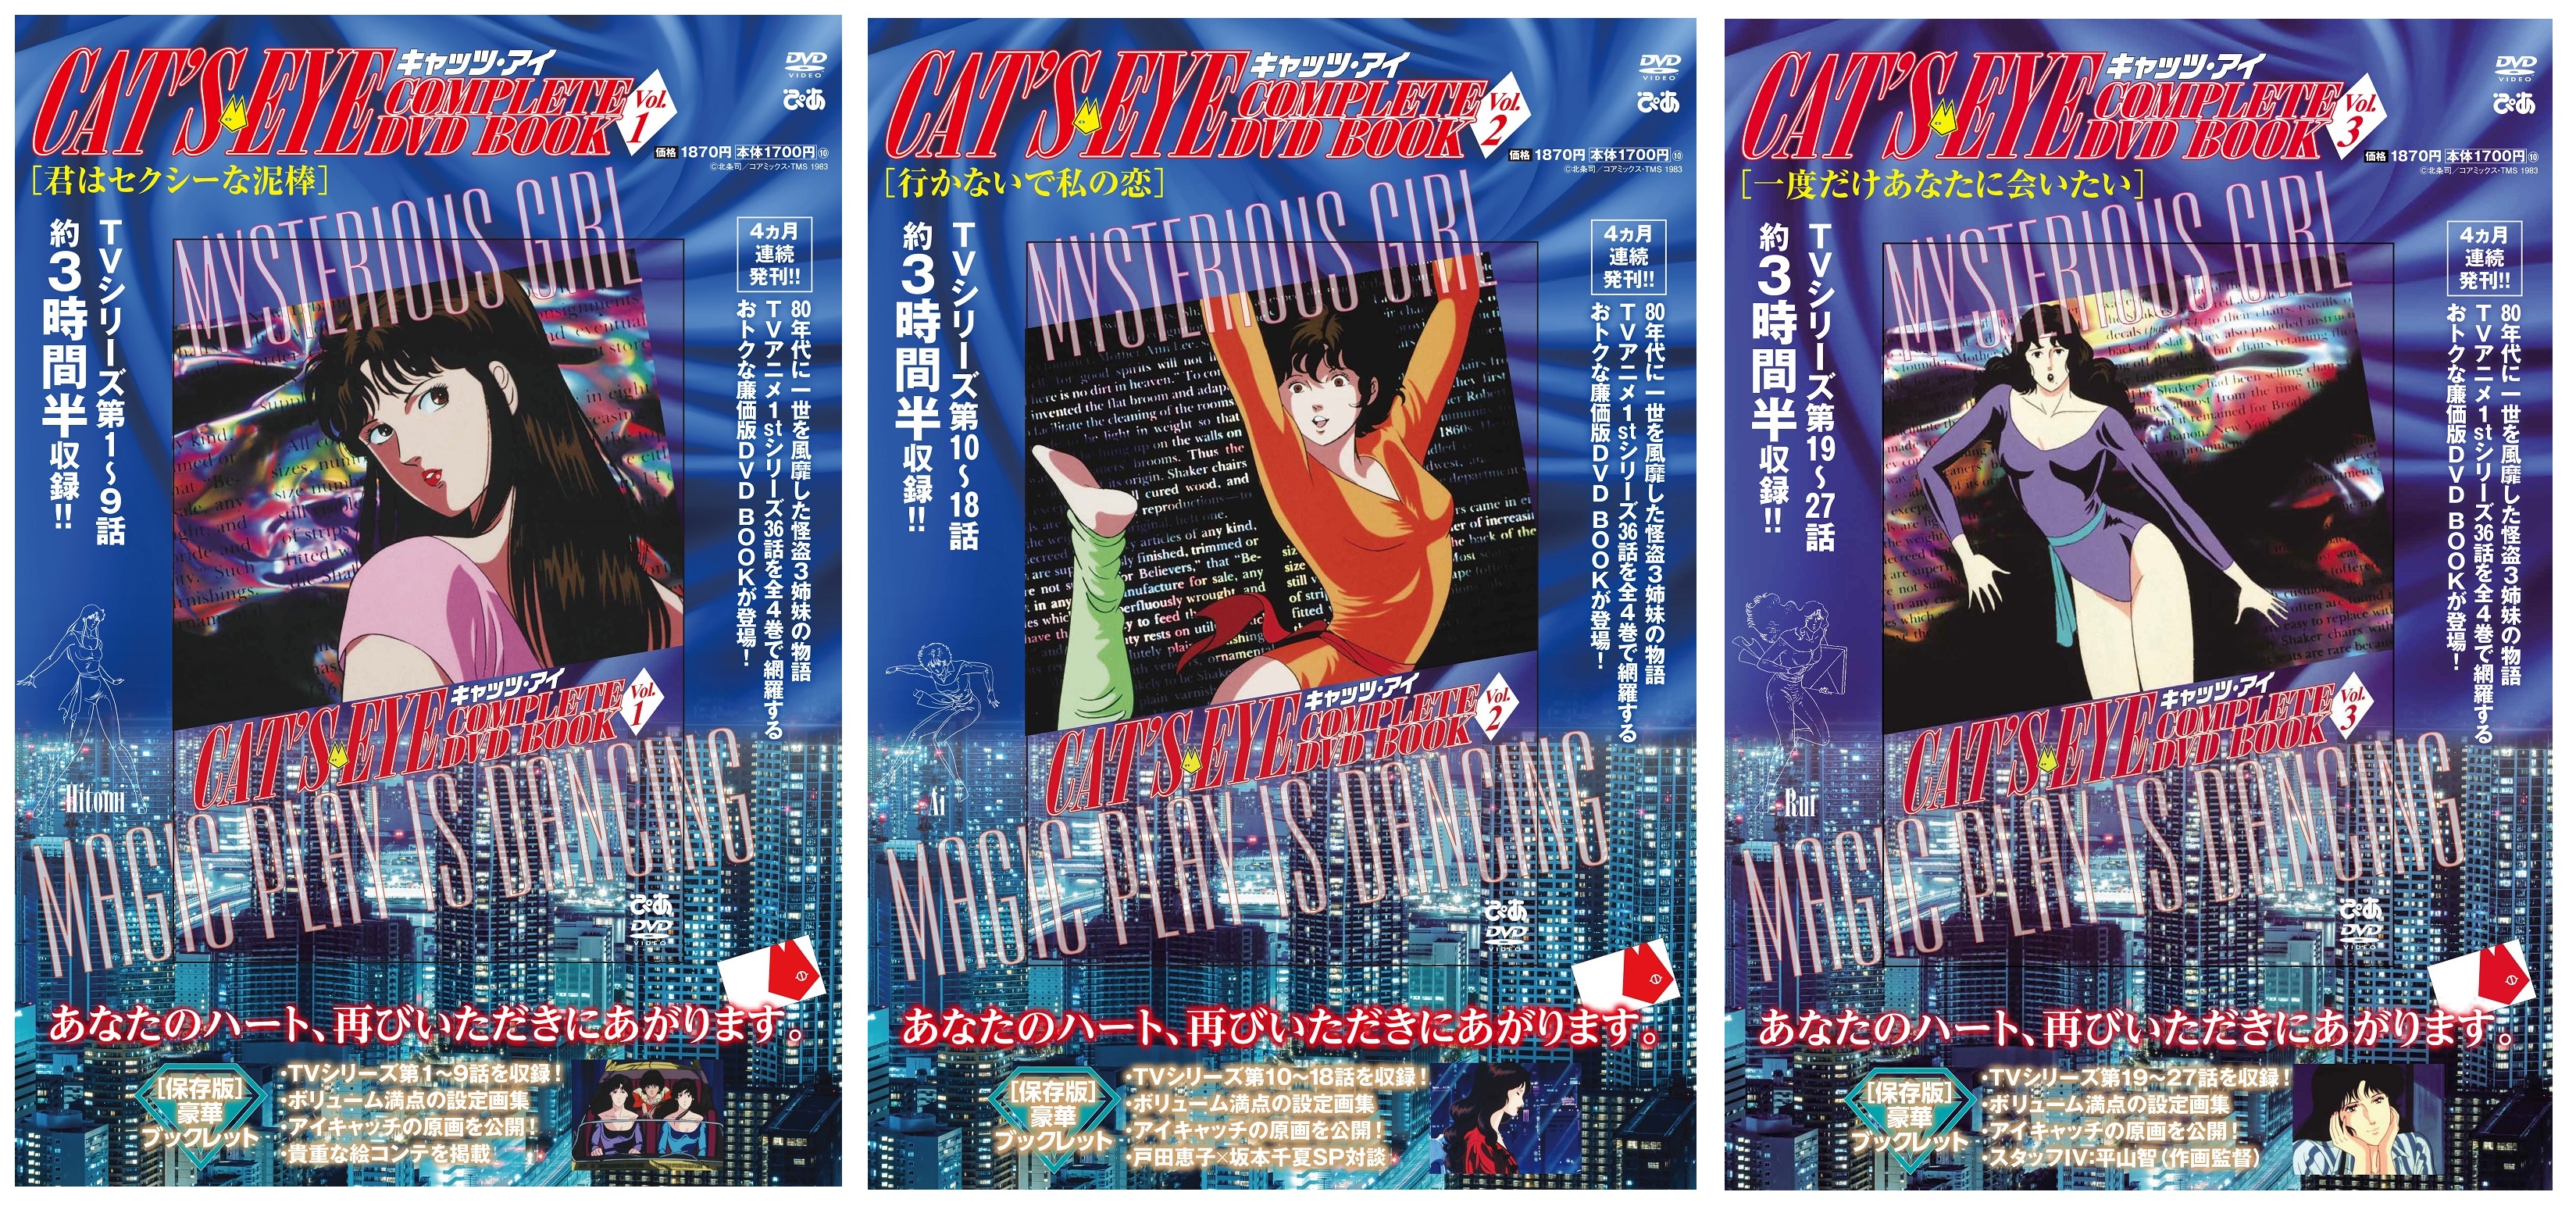 『キャッツ・アイ COMPLETE DVD BOOK』　©北条司／コアミックス・TMS 1983